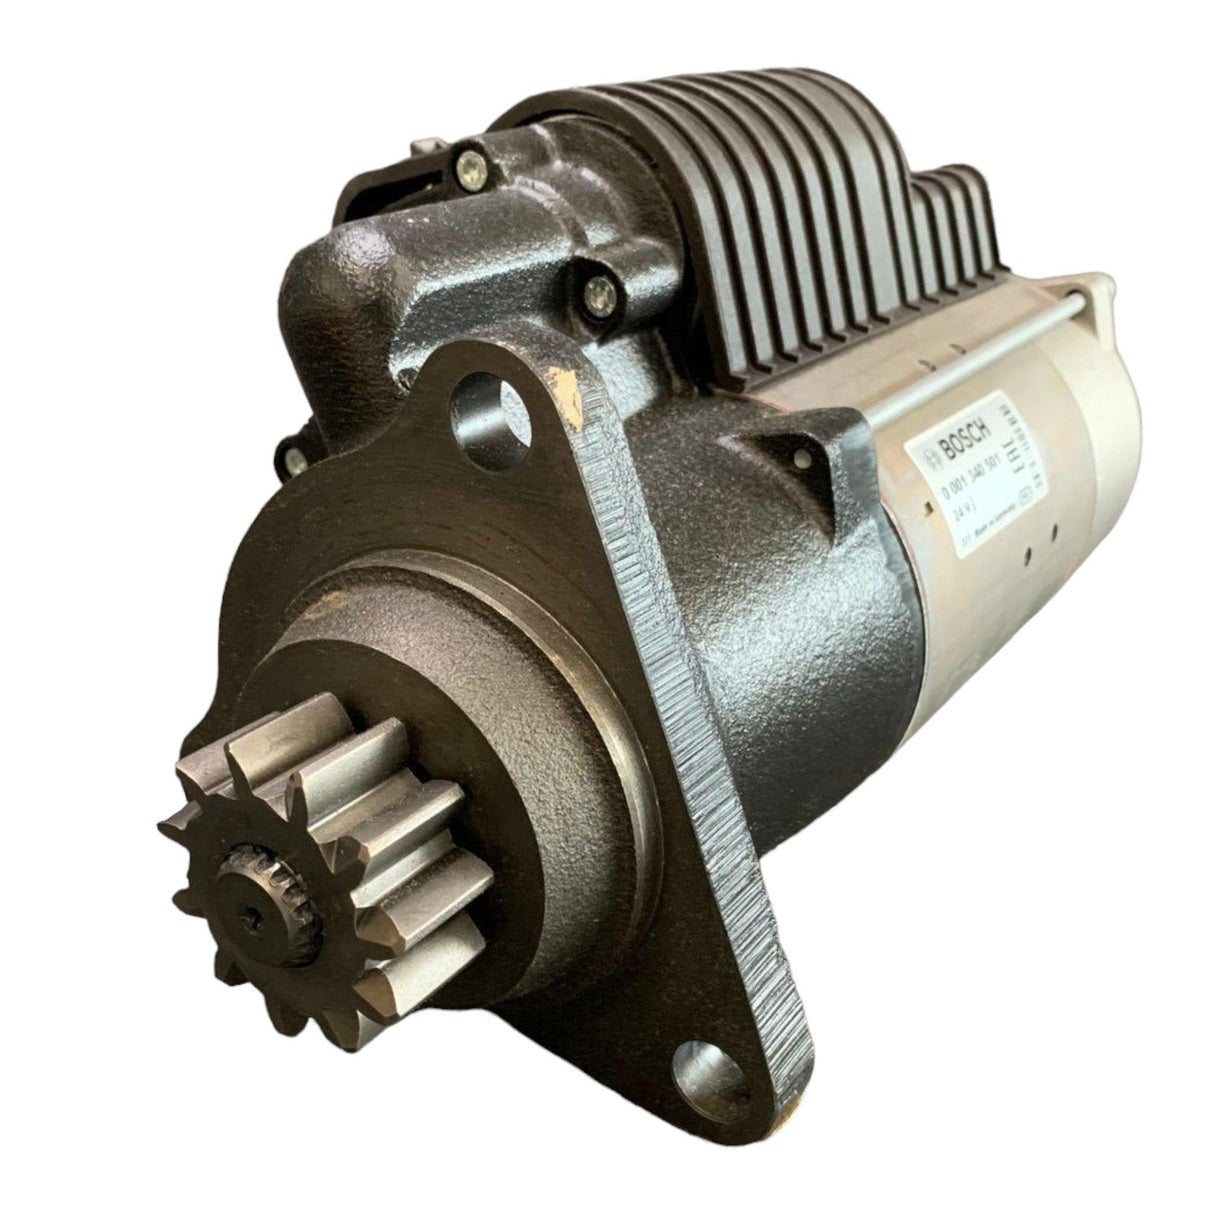 X52-417-200-001 Genuine Bosch Starter Motor 24V.